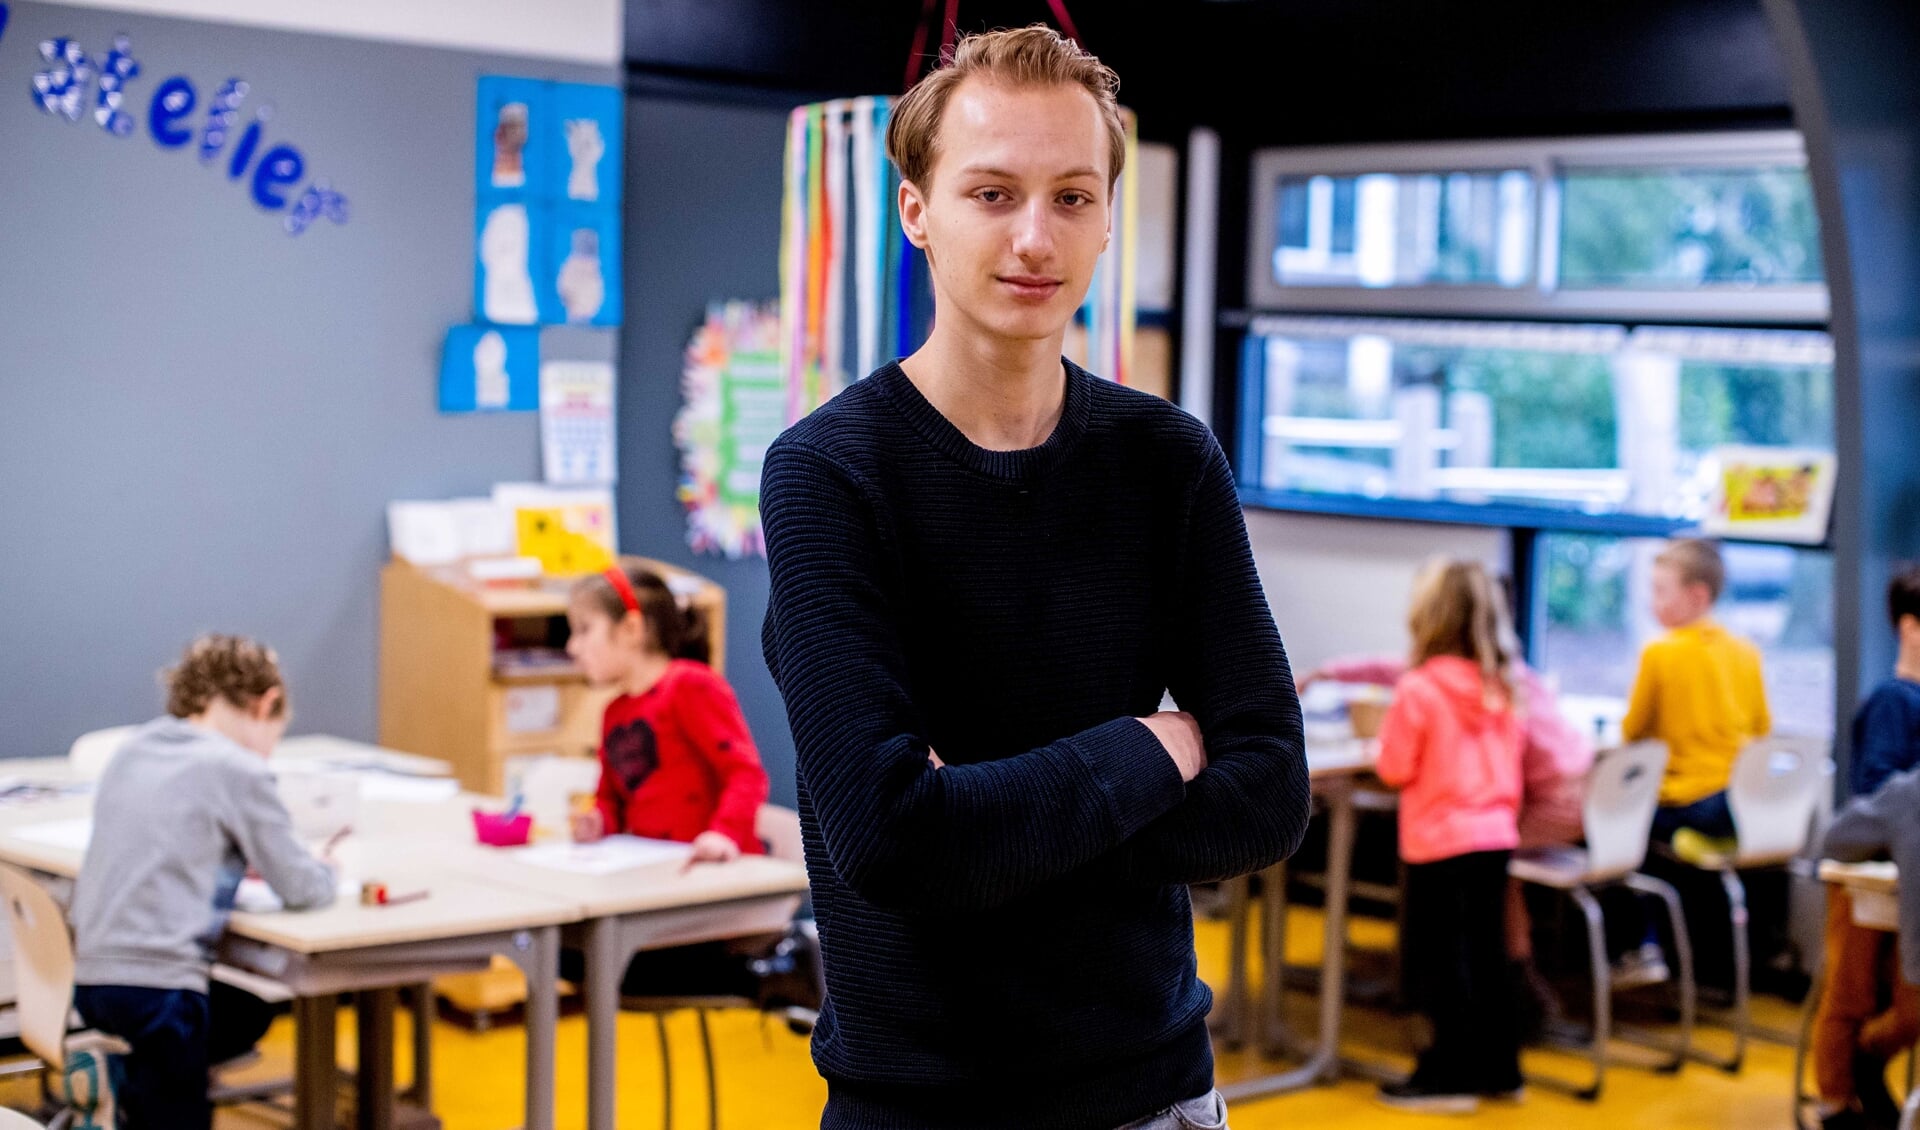 Over een paar jaar hoopt Joery van den Bos les te geven aan groep 7 of 8. De leerling van het Comenius College wil graag het basisonderwijs in. 